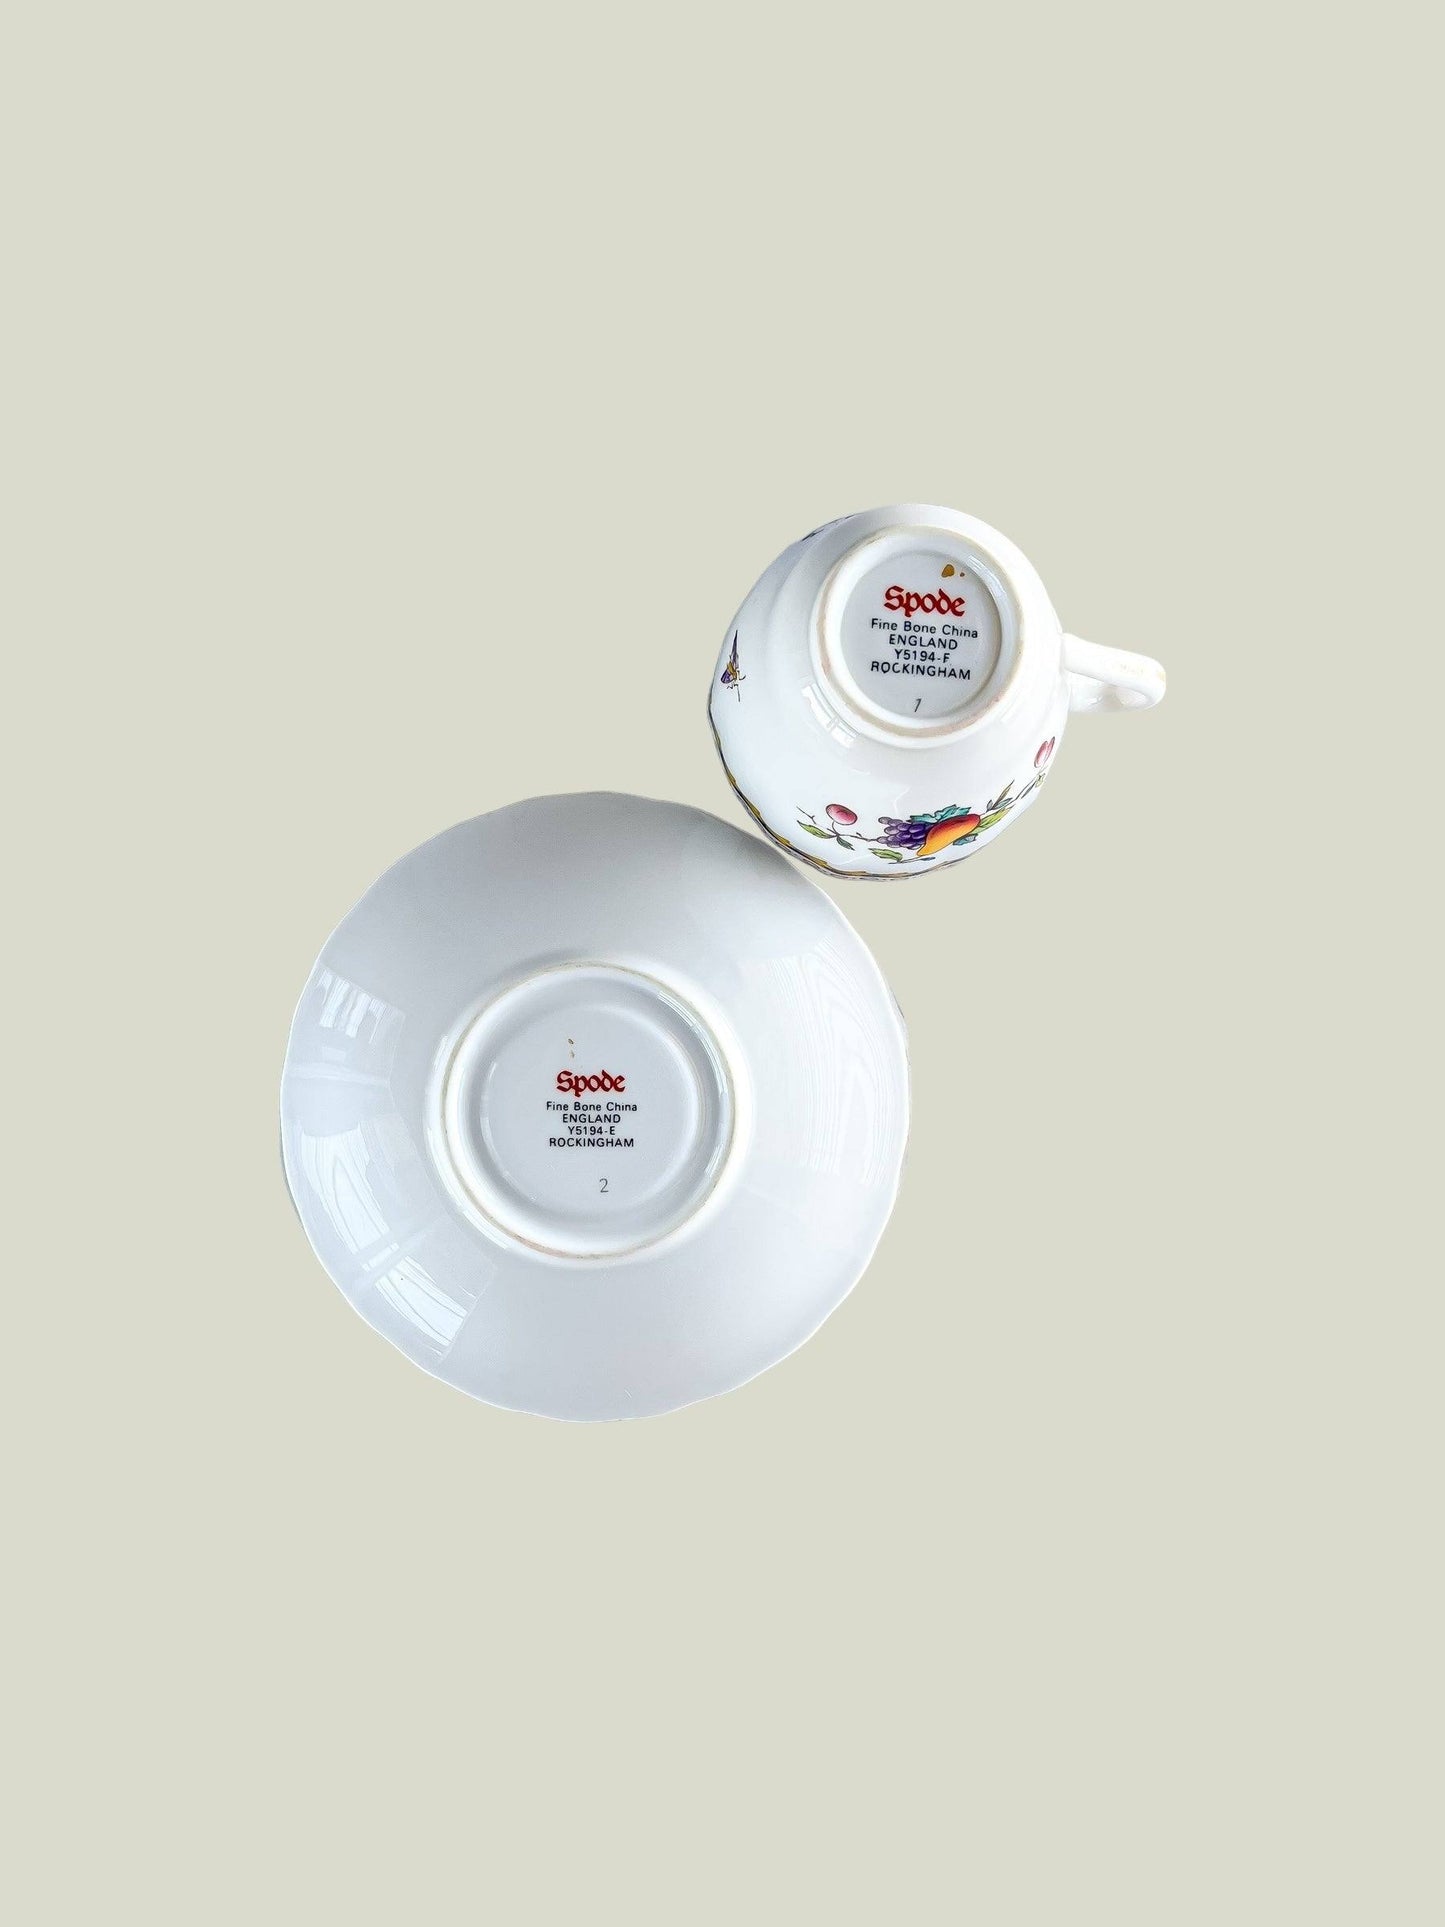 Spode Set of 6 Footed Demitasse Cup & Saucer Sets - ‘Rockingham’ Collection (Modern Version) - SOSC Home